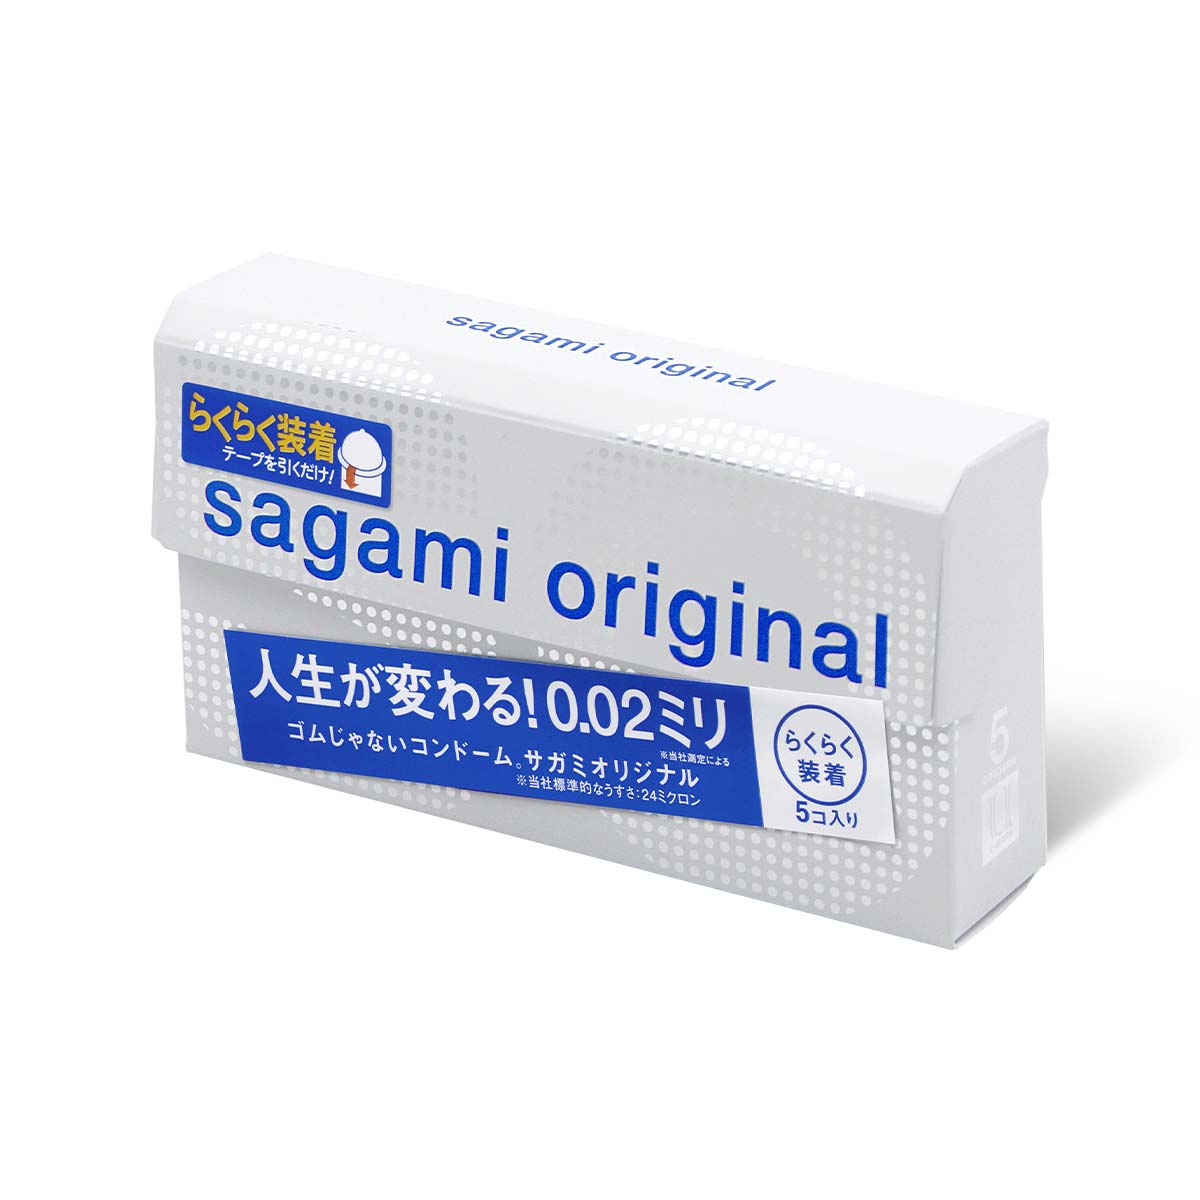 SAGAMI 相模原創 0.02 快閃 (第二代) 5 片裝 PU 安全套 安全套 購買